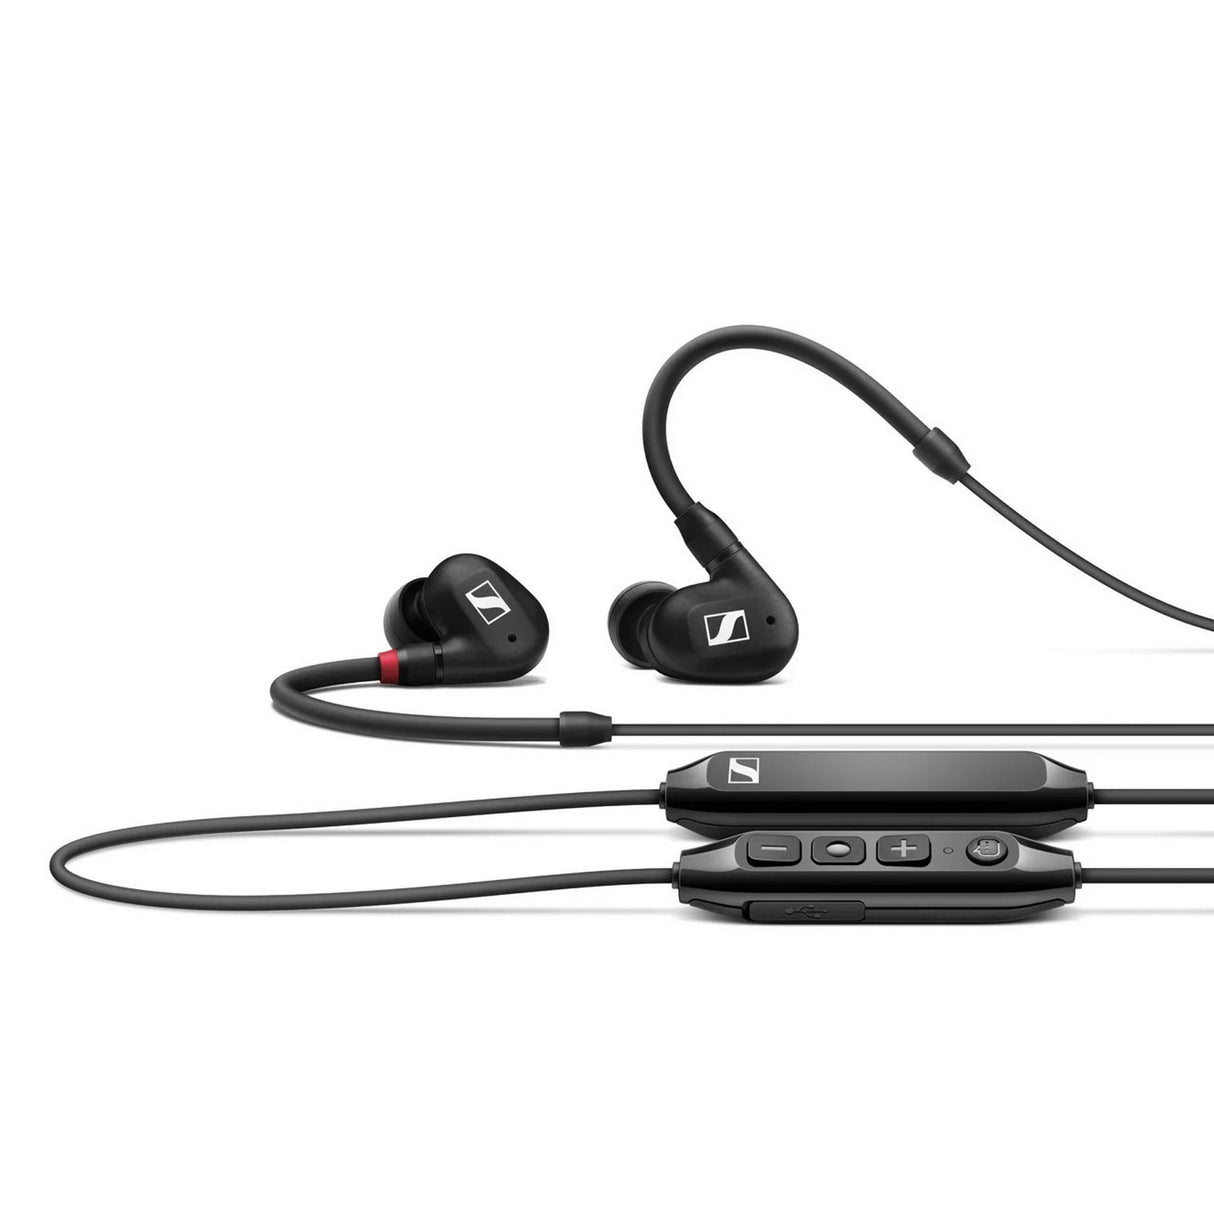 Sennheiser IE 100 PRO Wireless In-Ear Monitoring Headphone, Black